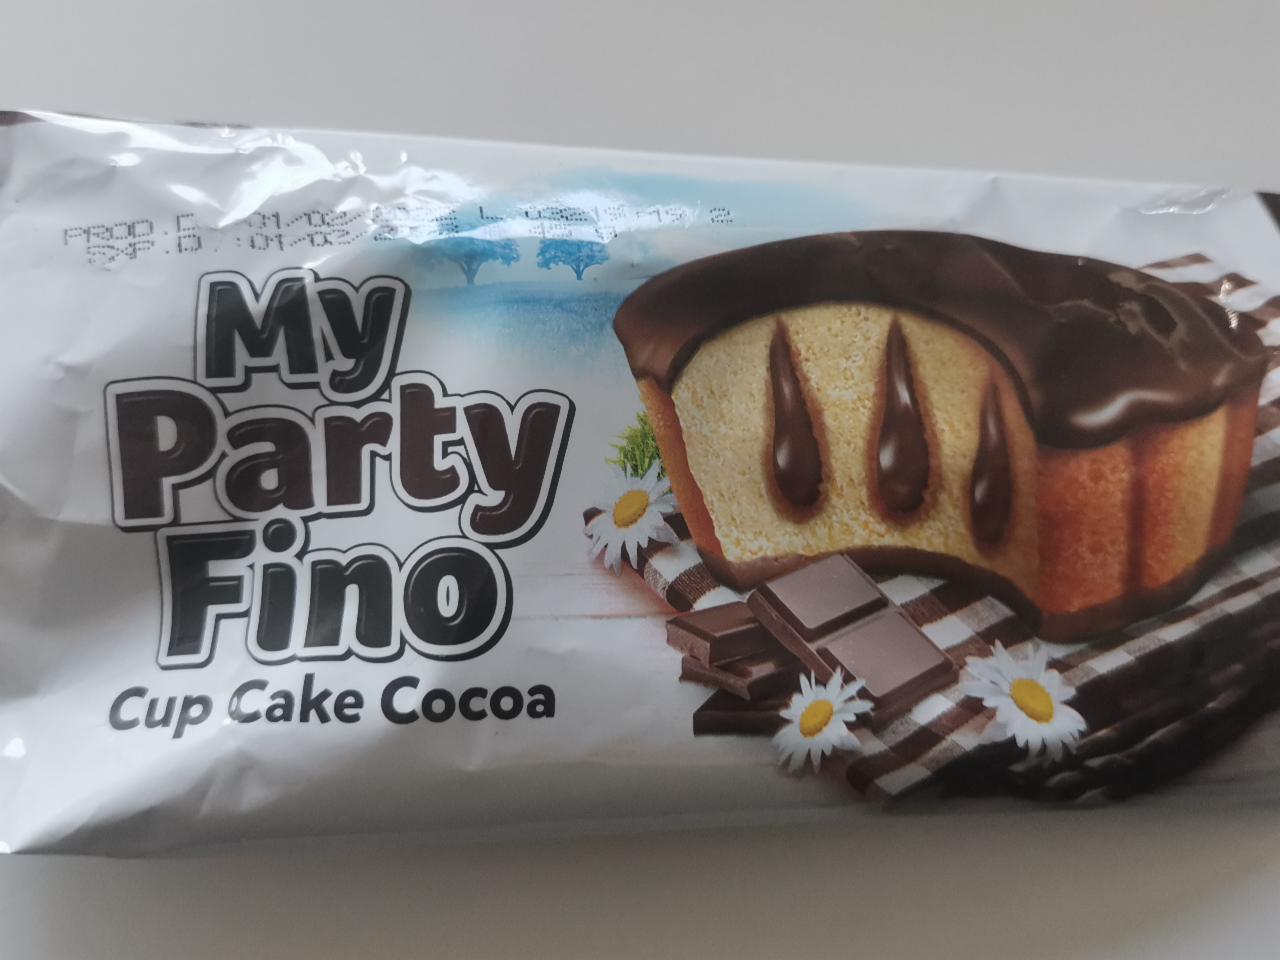 Fotografie - My party fino cup cake cocoa